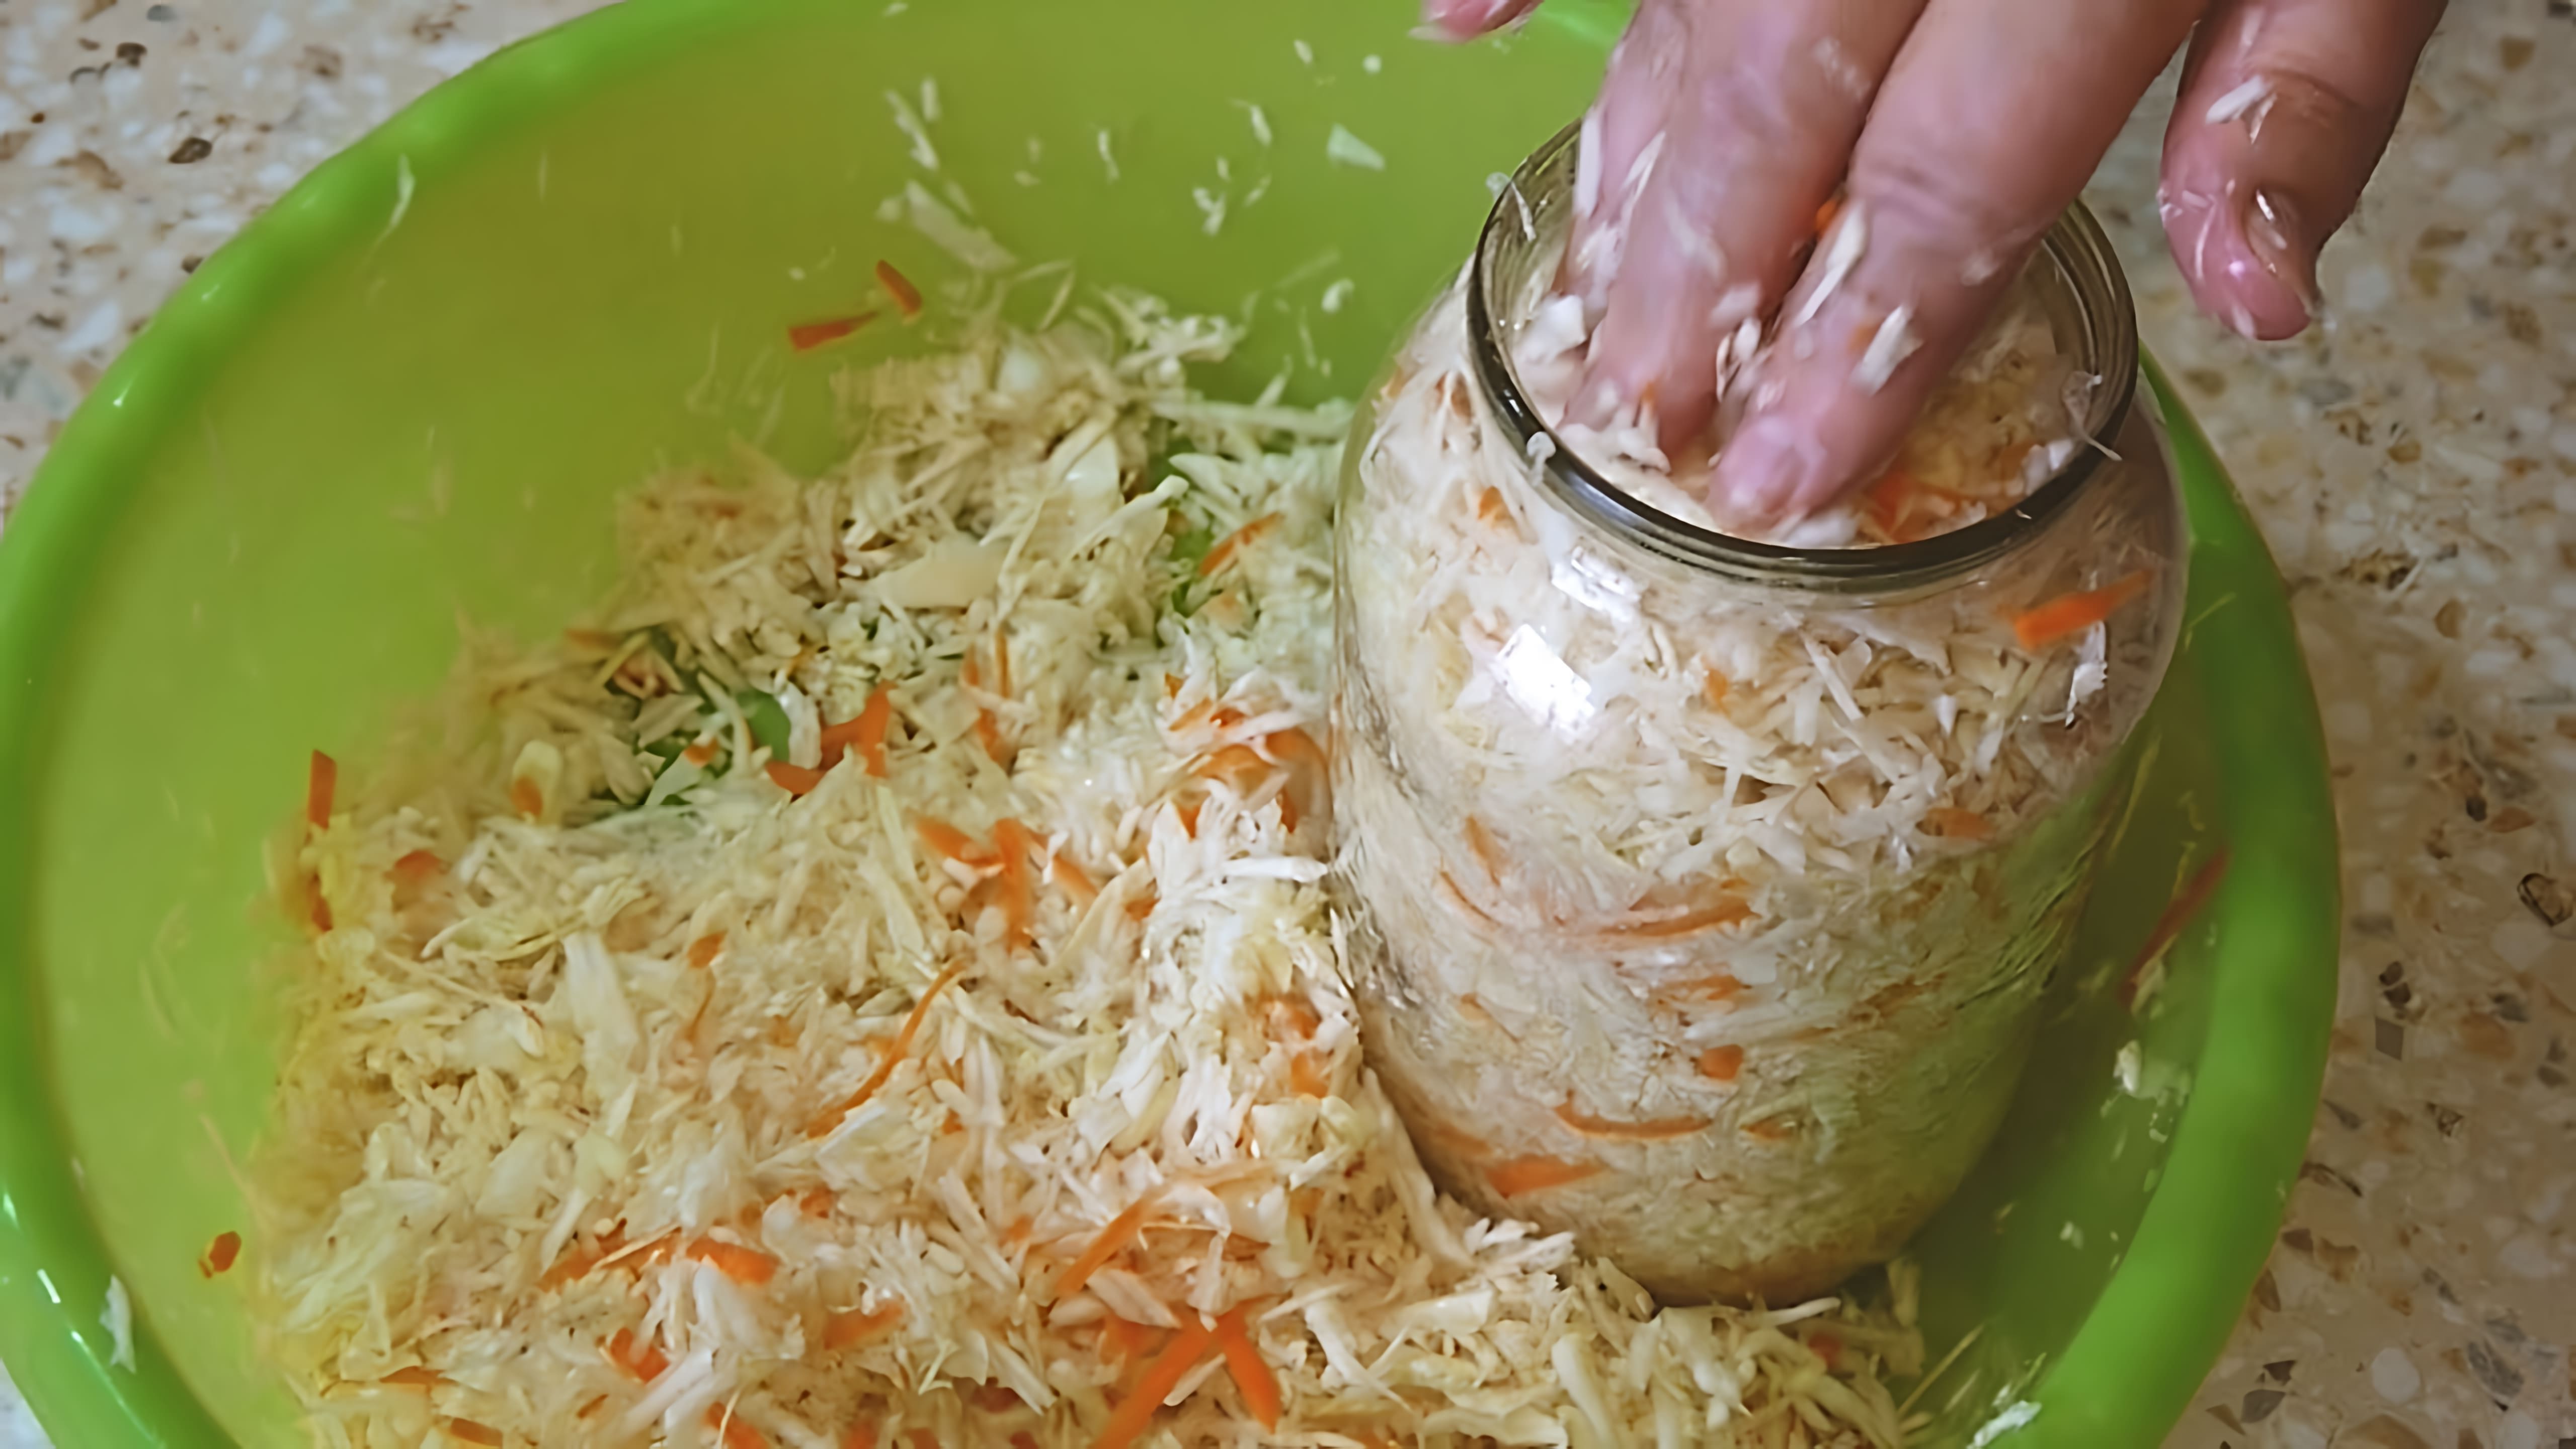 В данном видео демонстрируется процесс приготовления квашеной капусты в банке